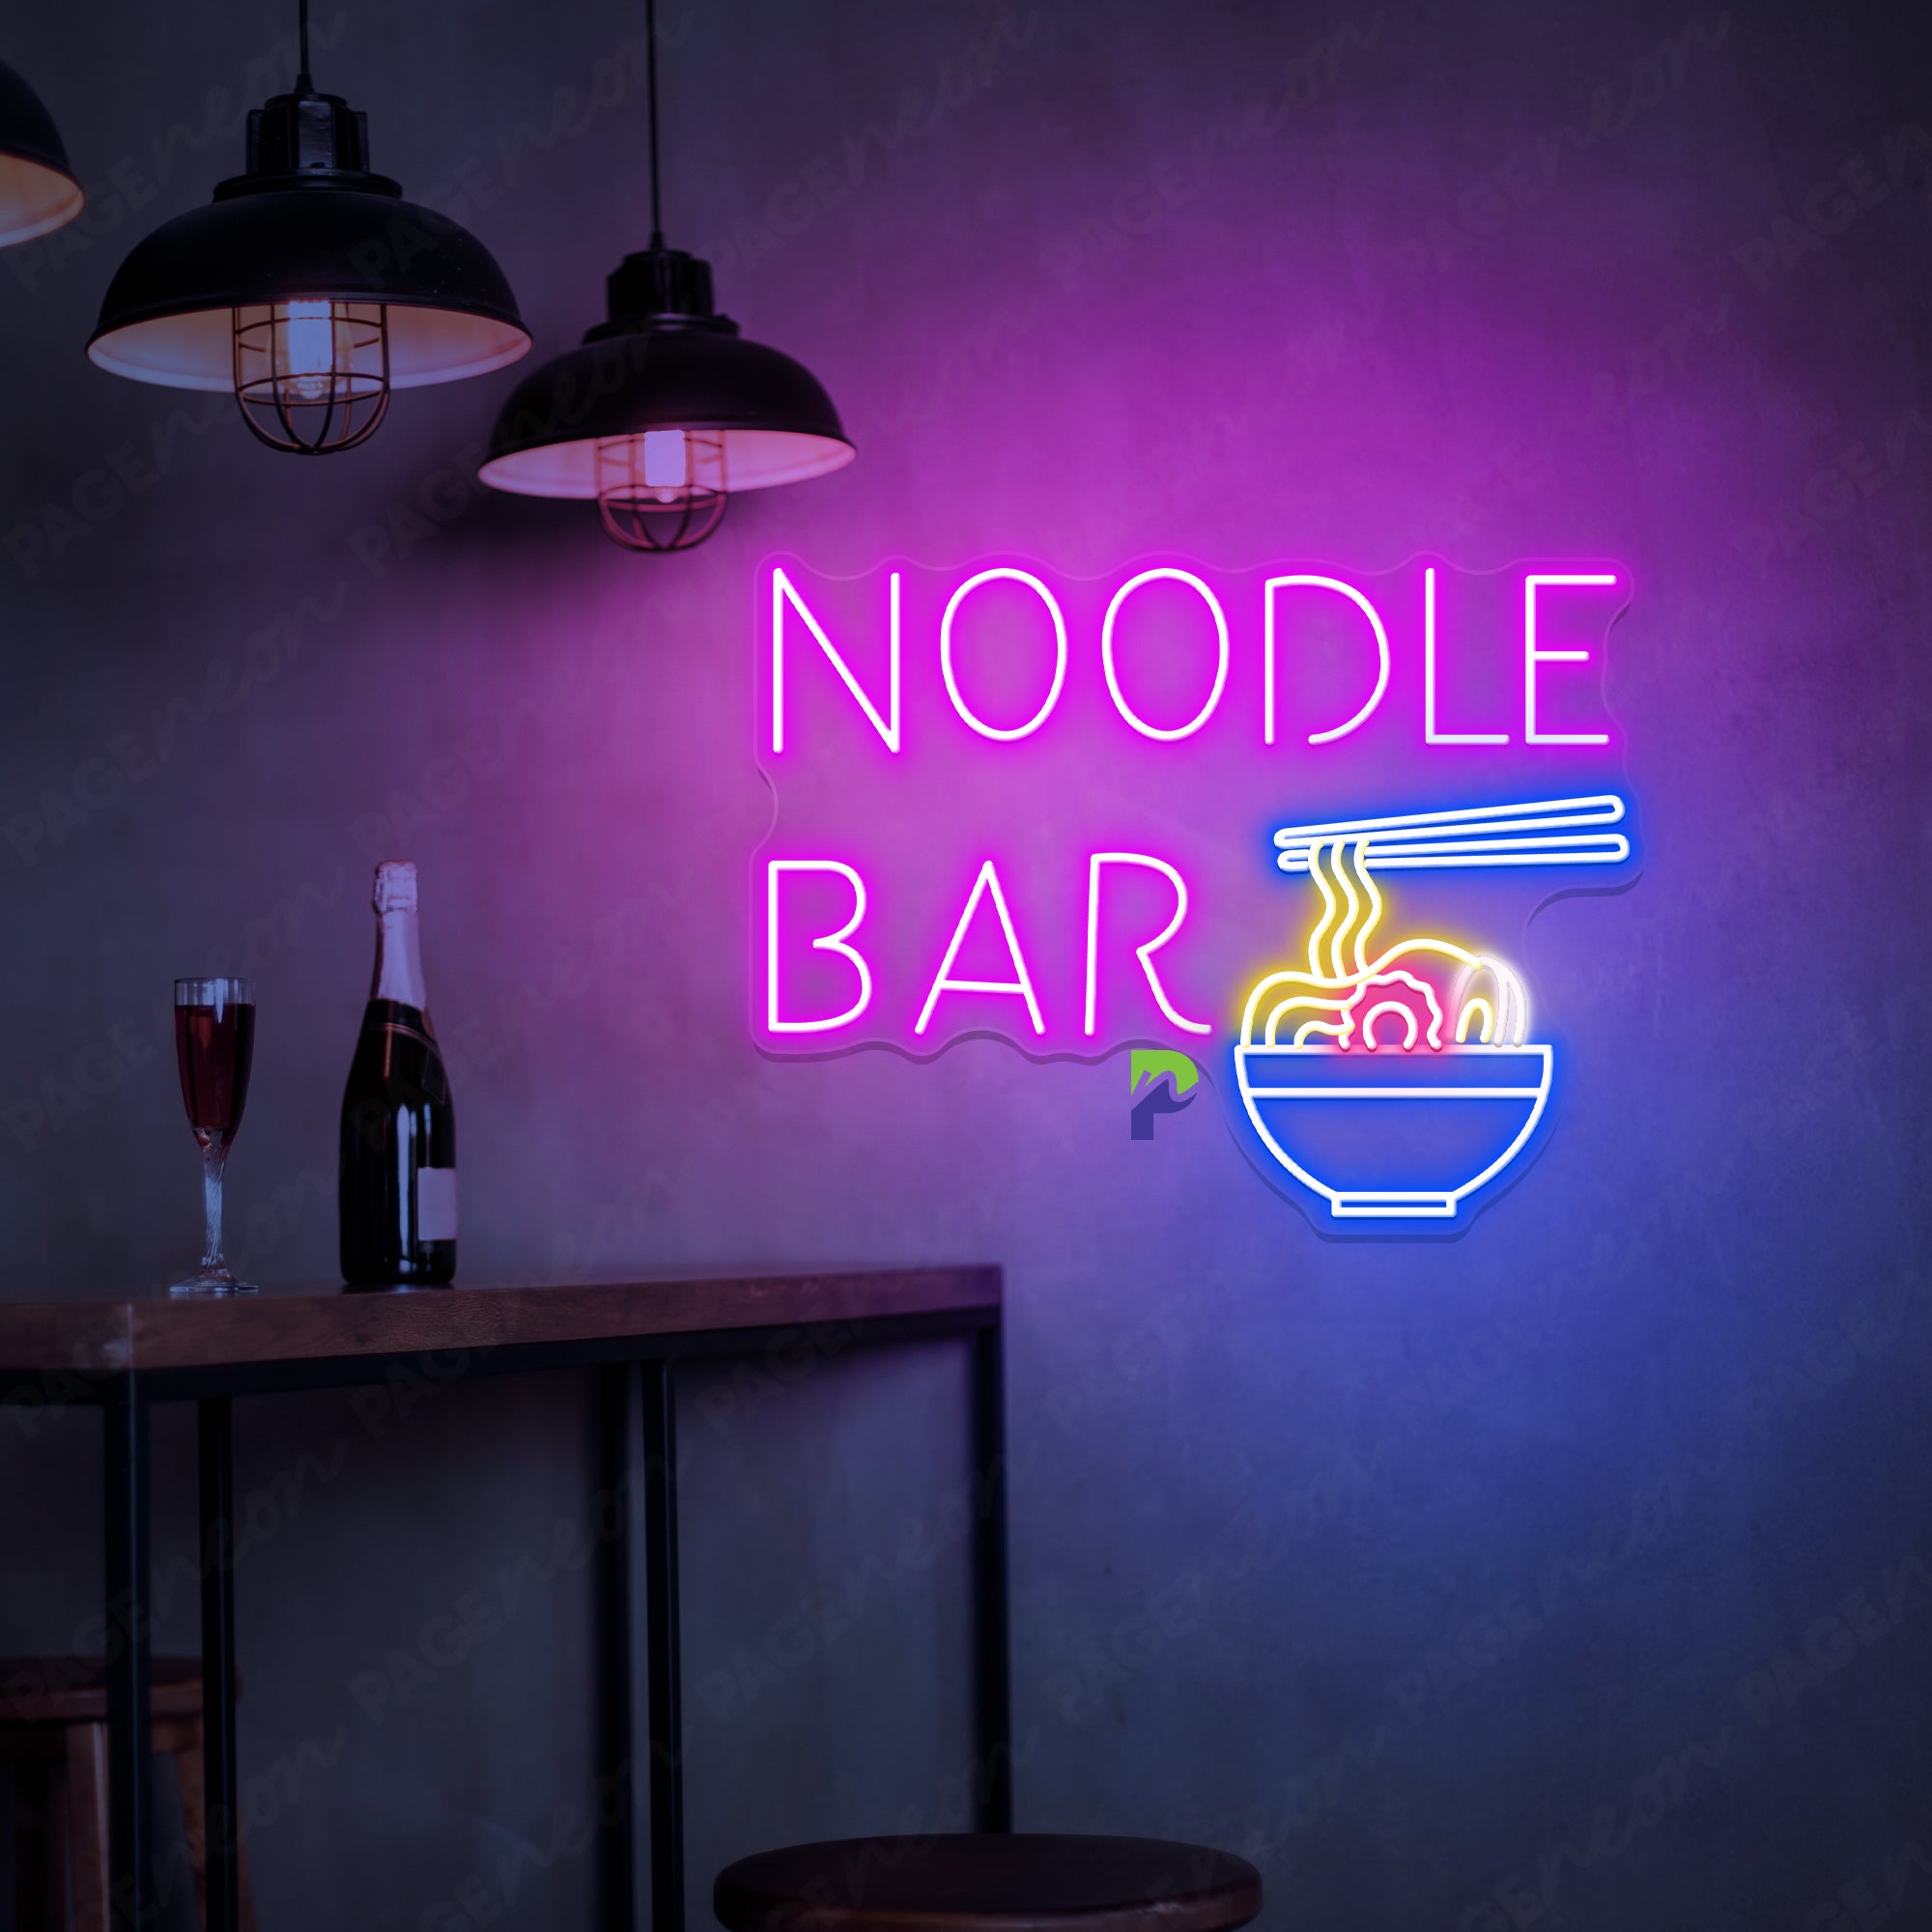 Neon Noodle Bar Sign Special Led Light For Restaurant